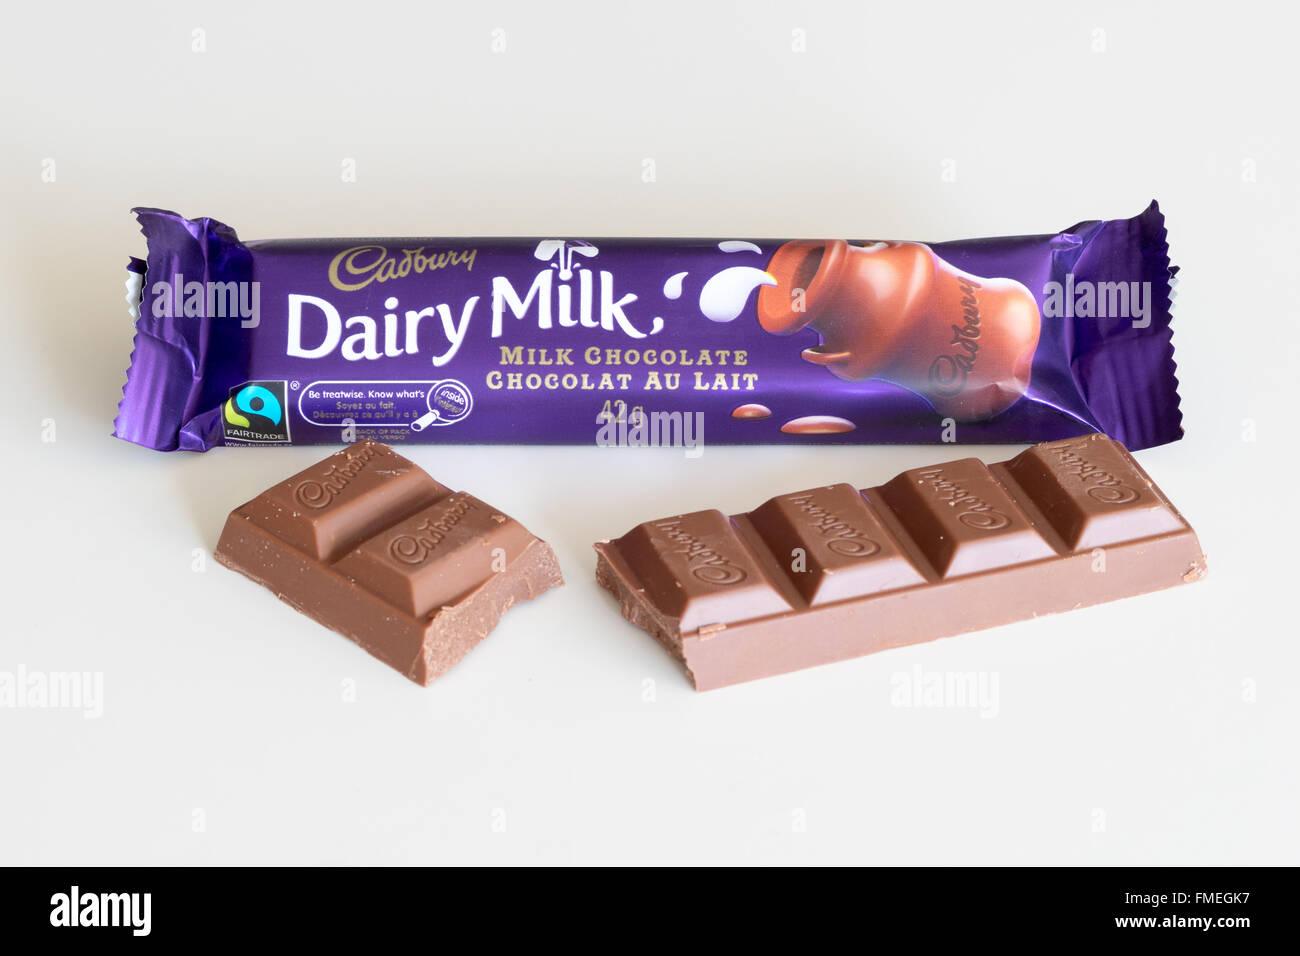 Una barra de chocolate Cadbury Dairy Milk. Embalaje canadiense se muestra. Foto de stock